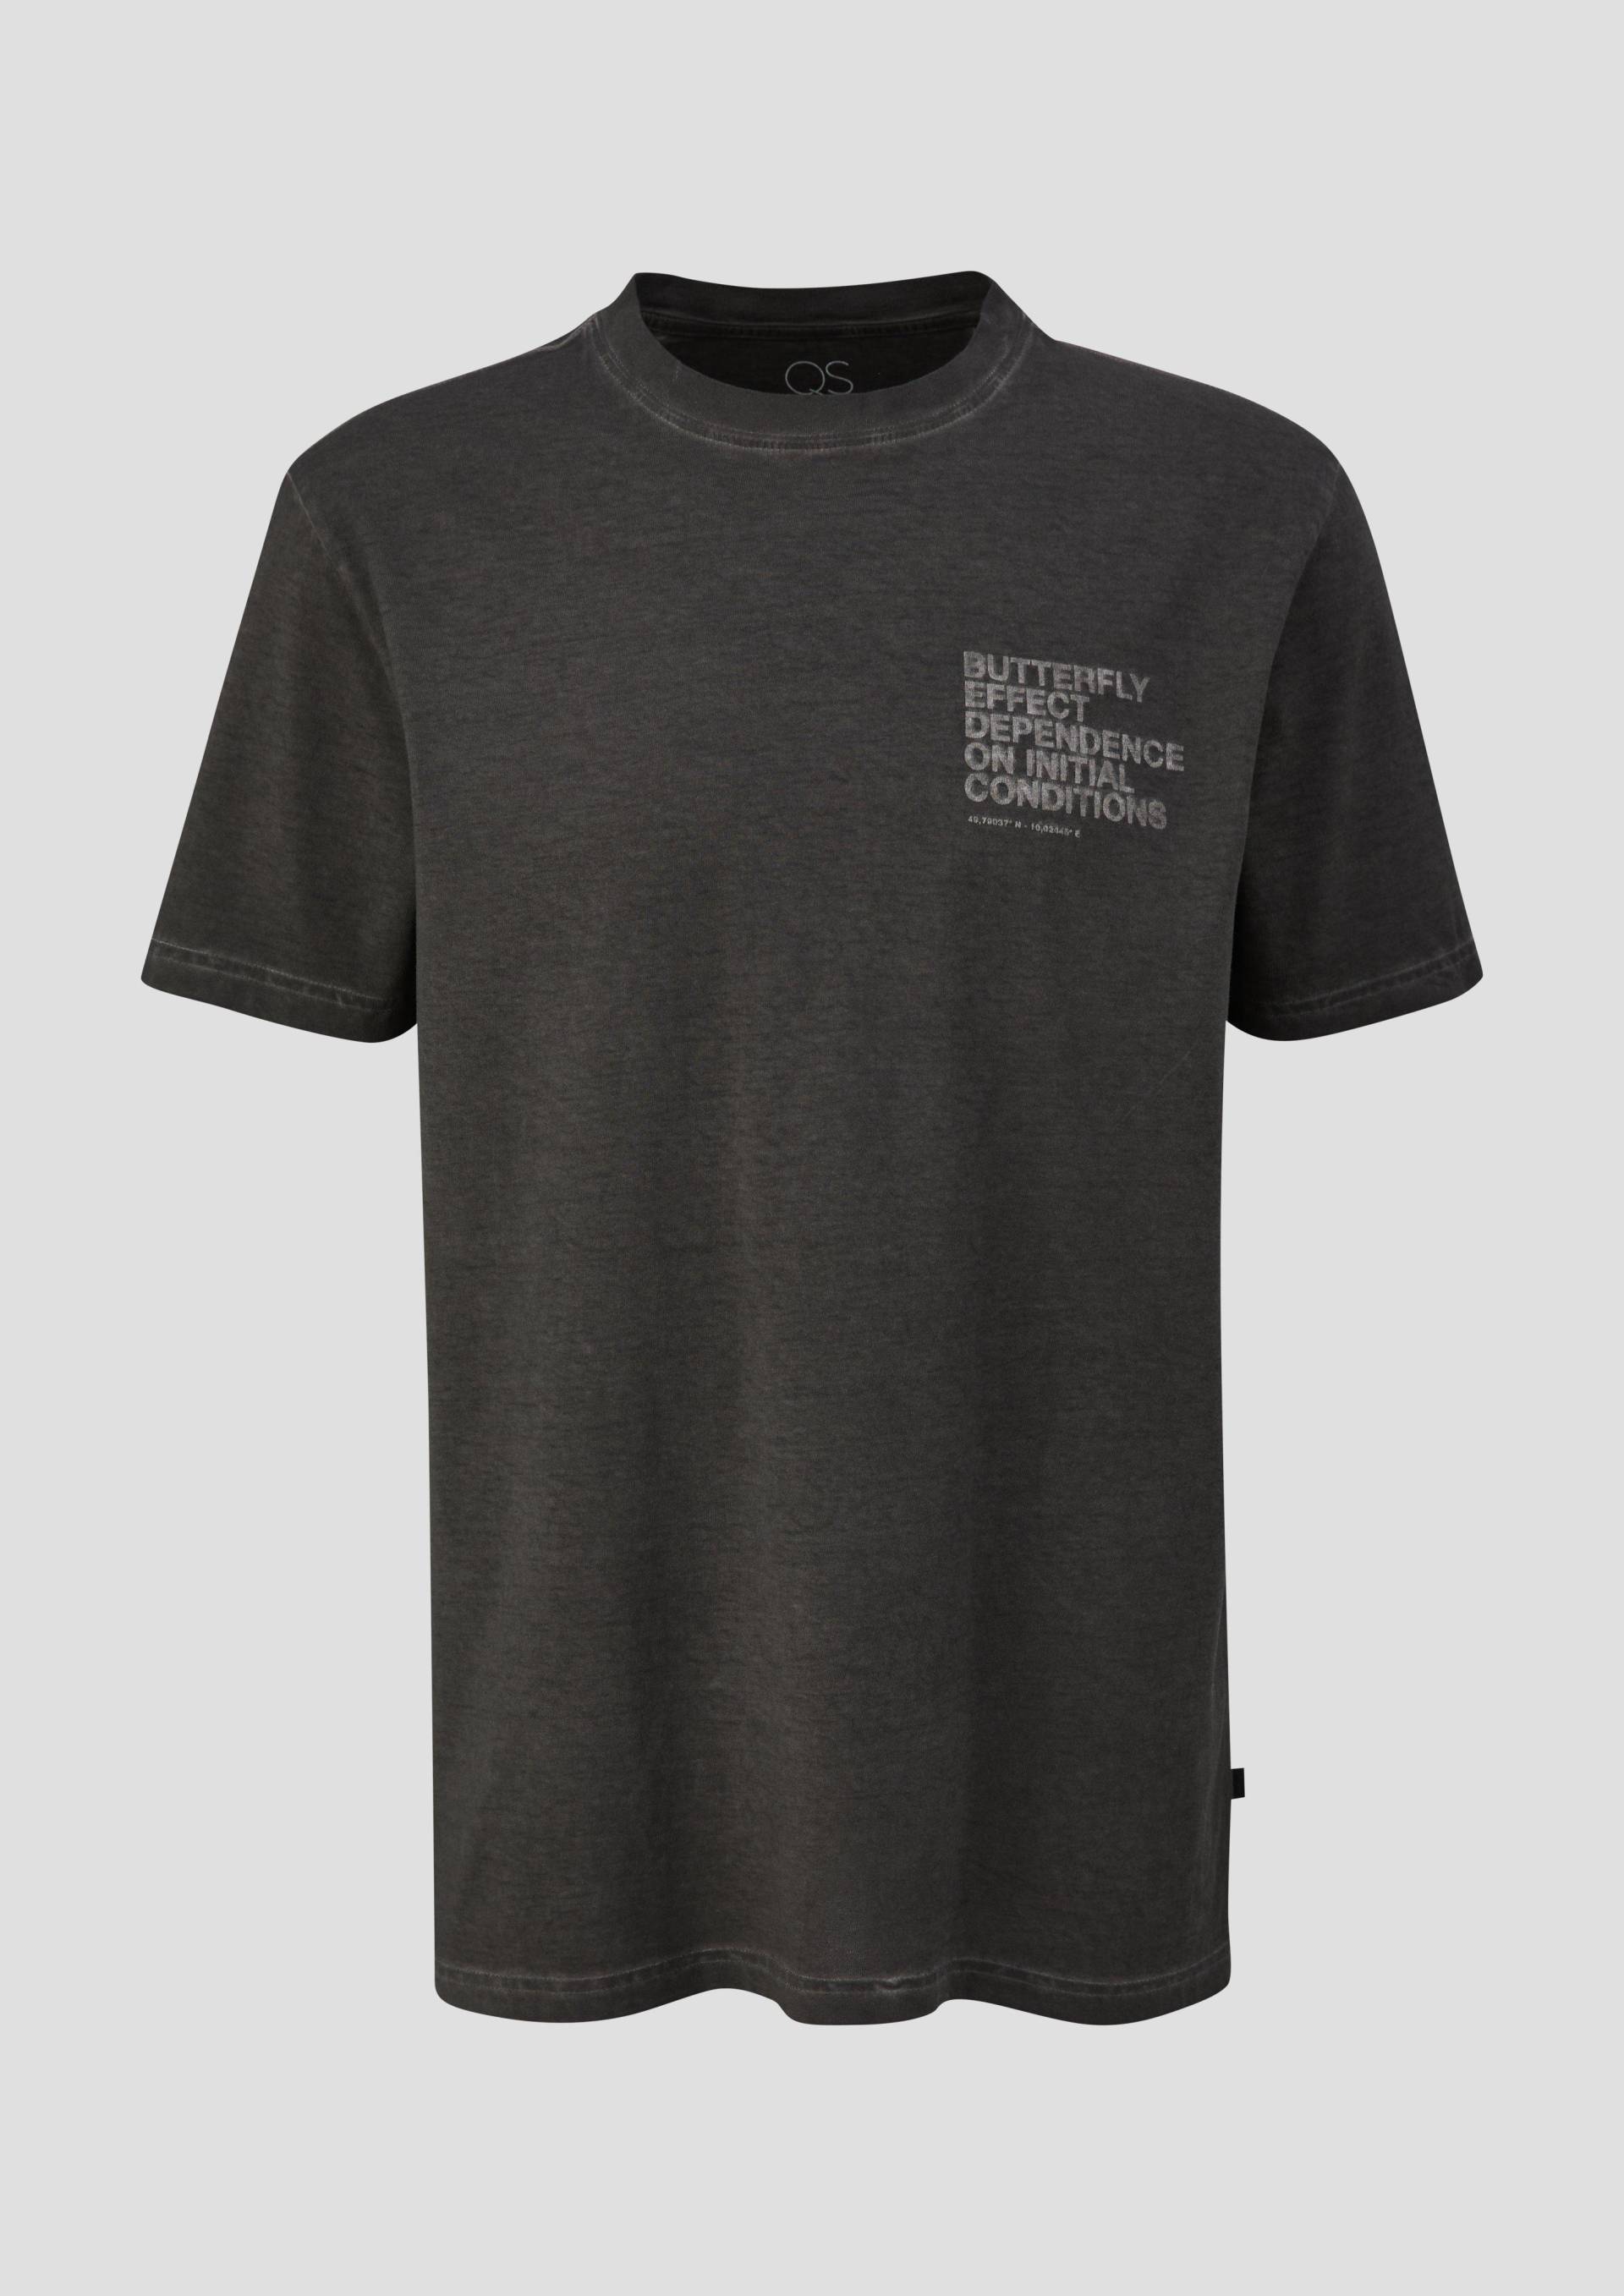 QS - T-Shirt mit Frontprint, Herren, schwarz von QS